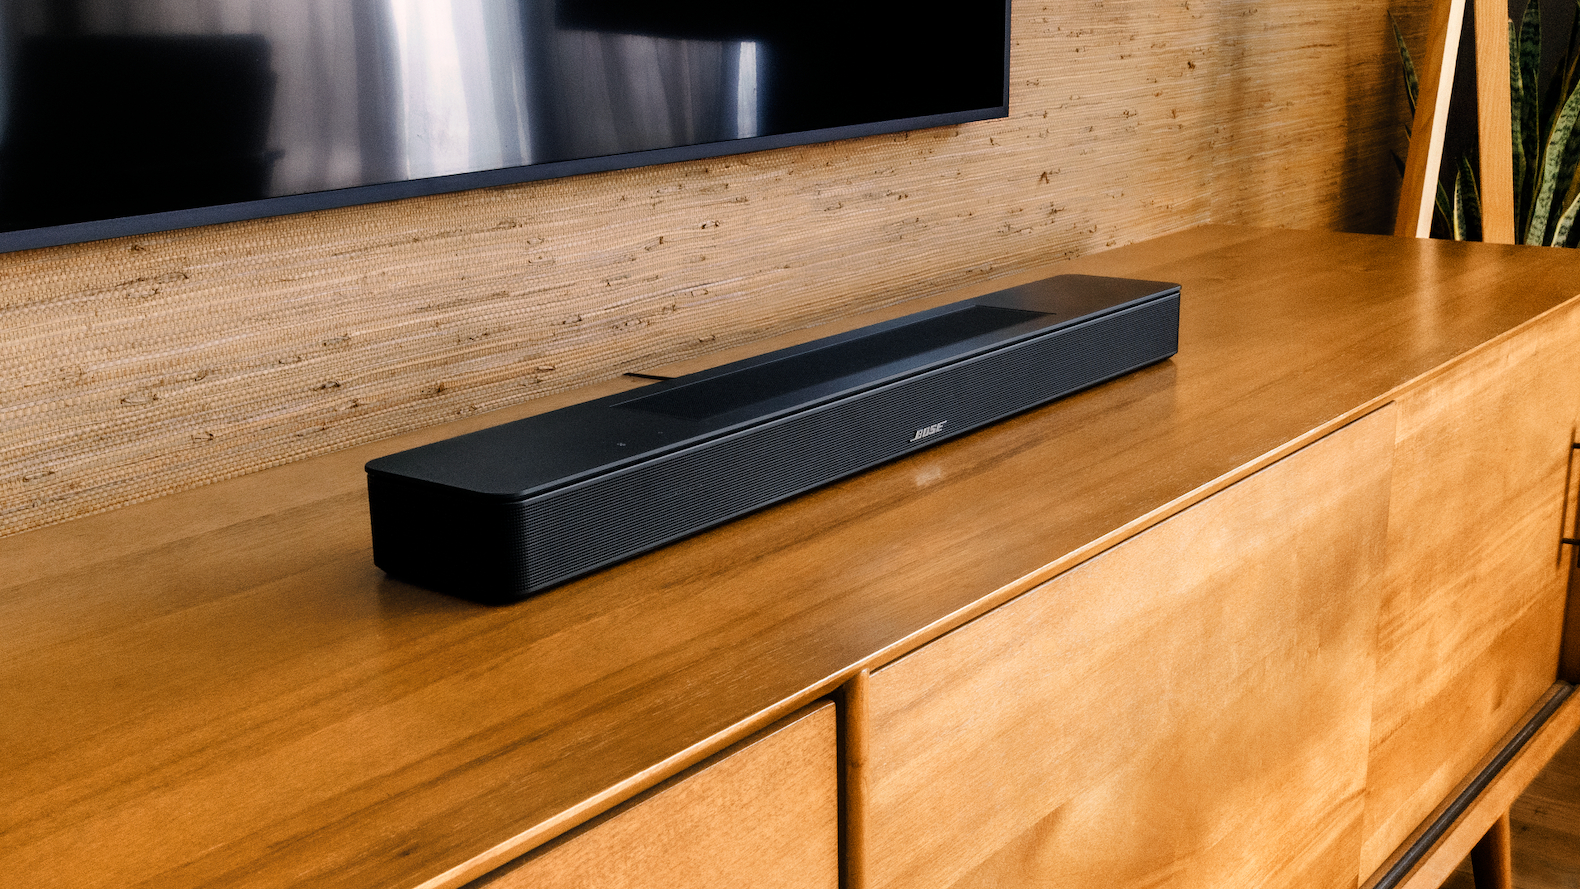 Bose Soundbar 600 on a wooden table under a TV